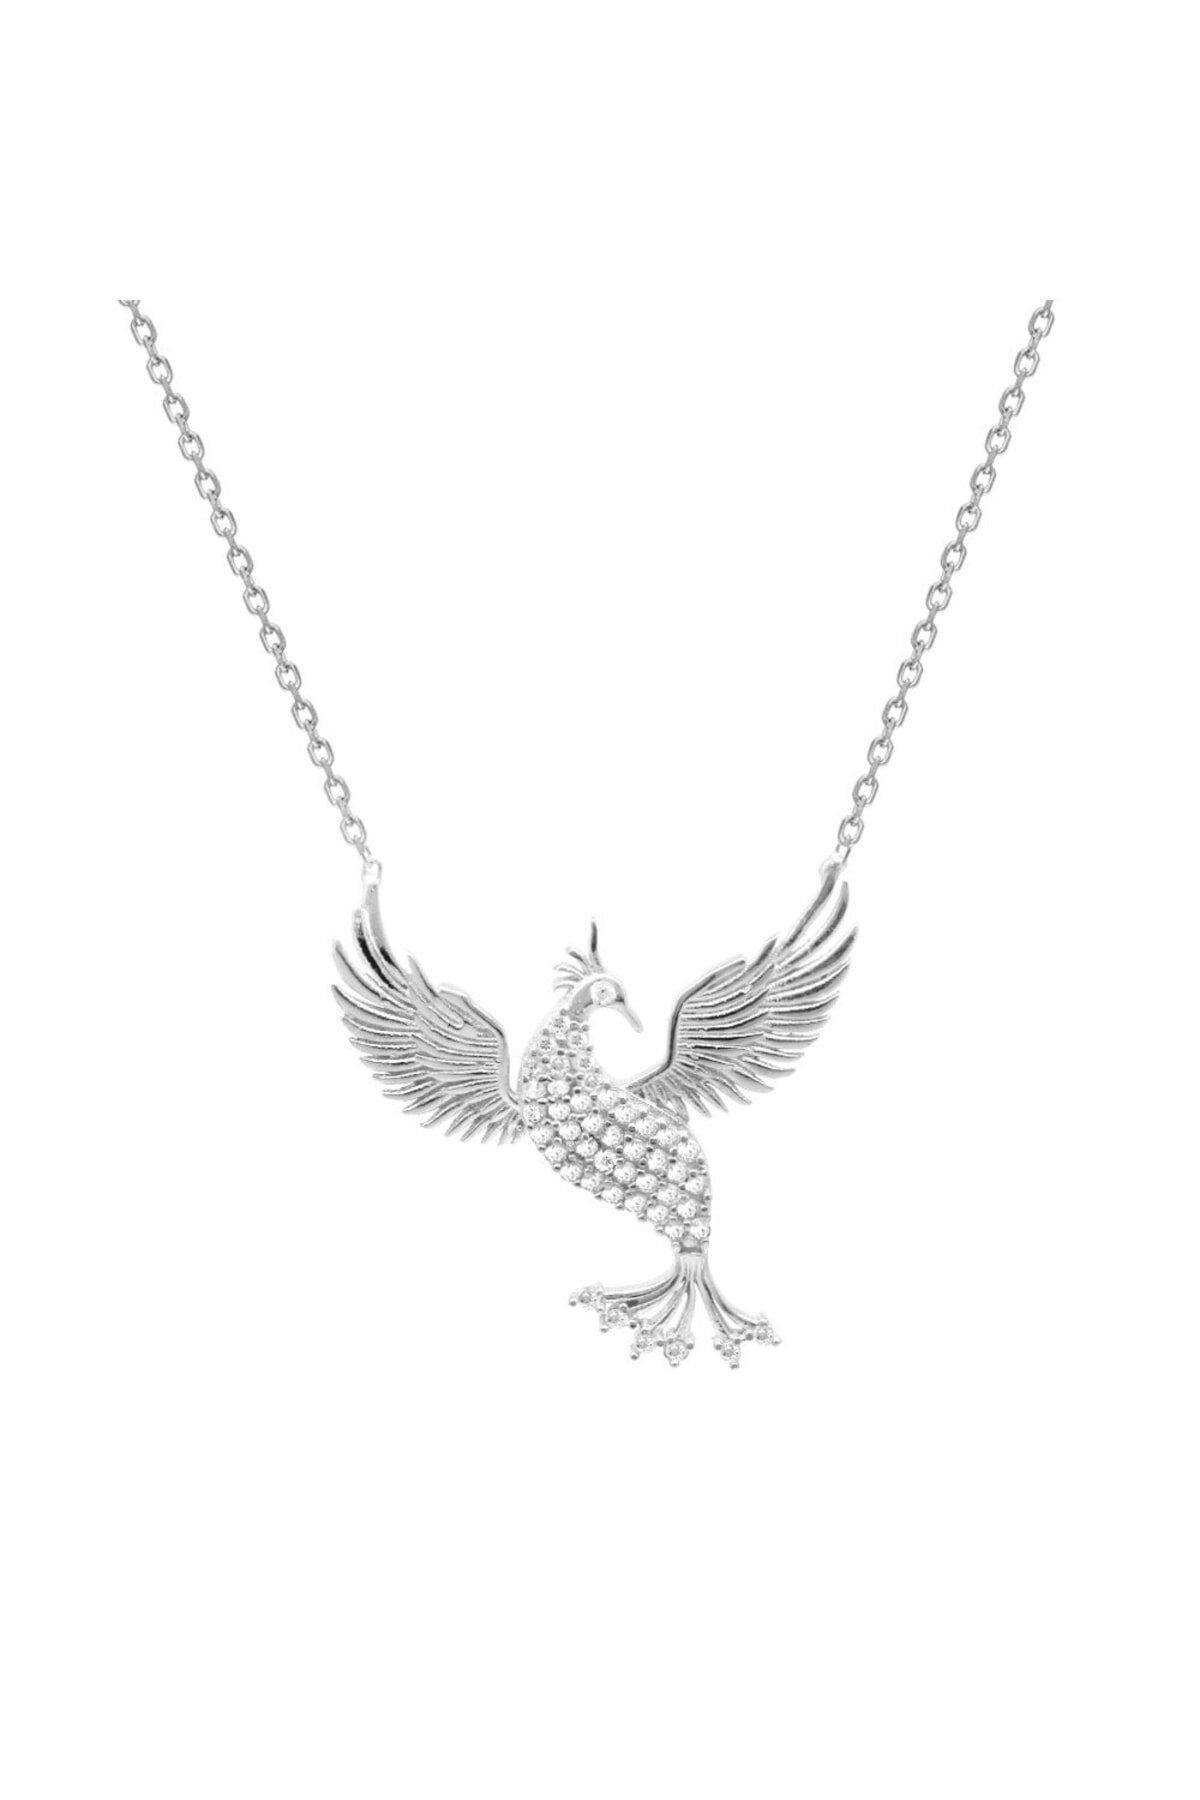 Tesbihane Beyaz Zirkon Taşlı Anka Kuşu Tasarım 925 Ayar Gümüş Kadın Kolye